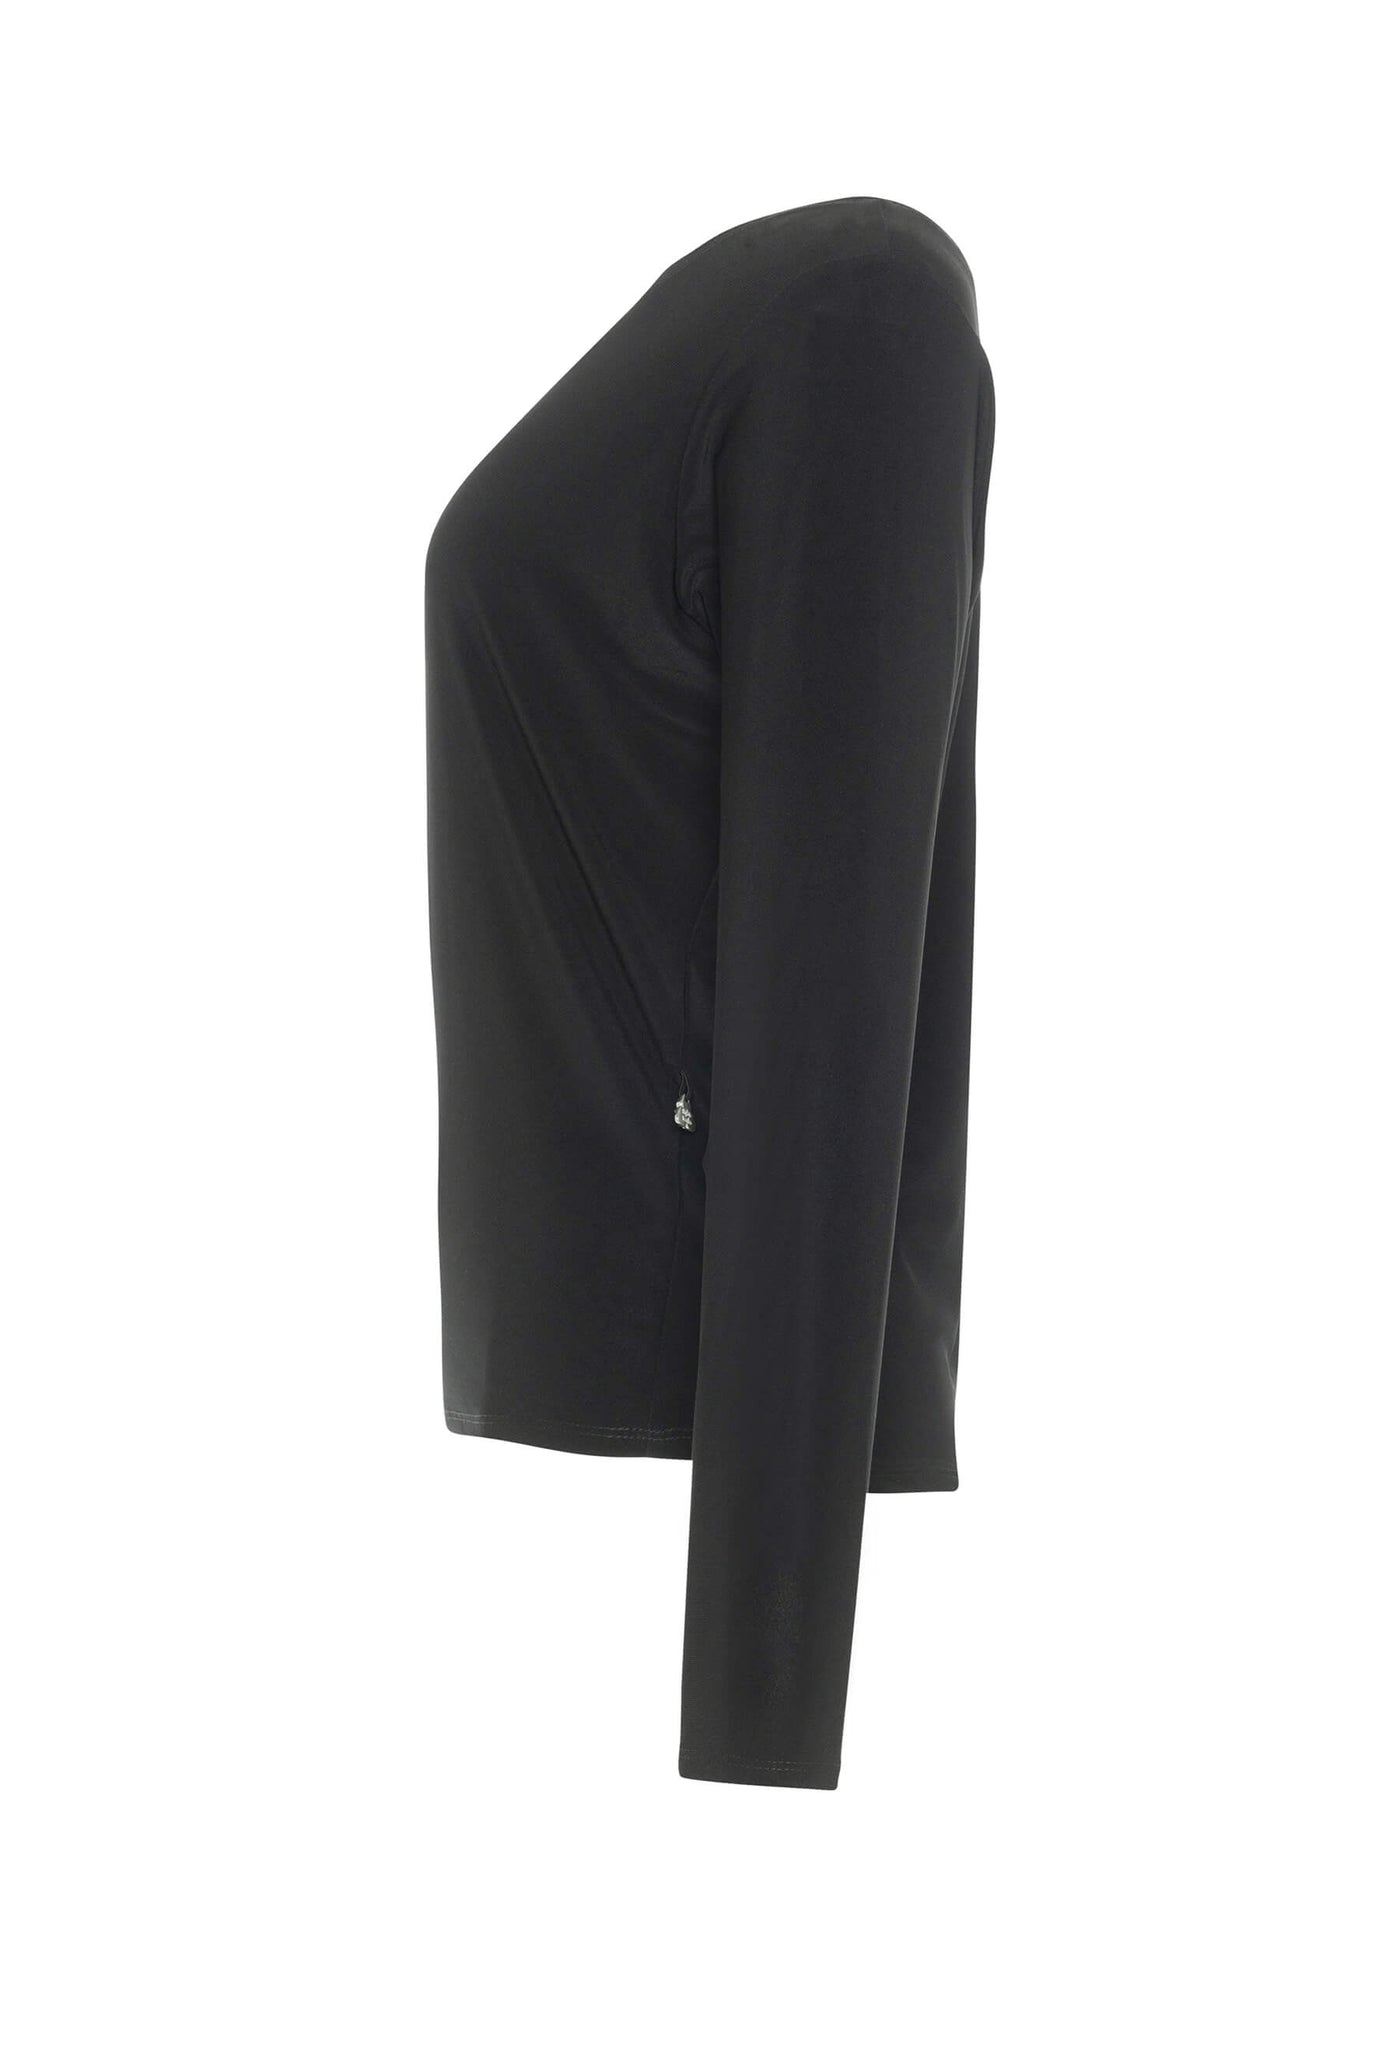 Le chandail Clarissa noir est une création de Katy St-Laurent et possède des manches longues dolman, une coupe ample décontractée et une encolure ronde.